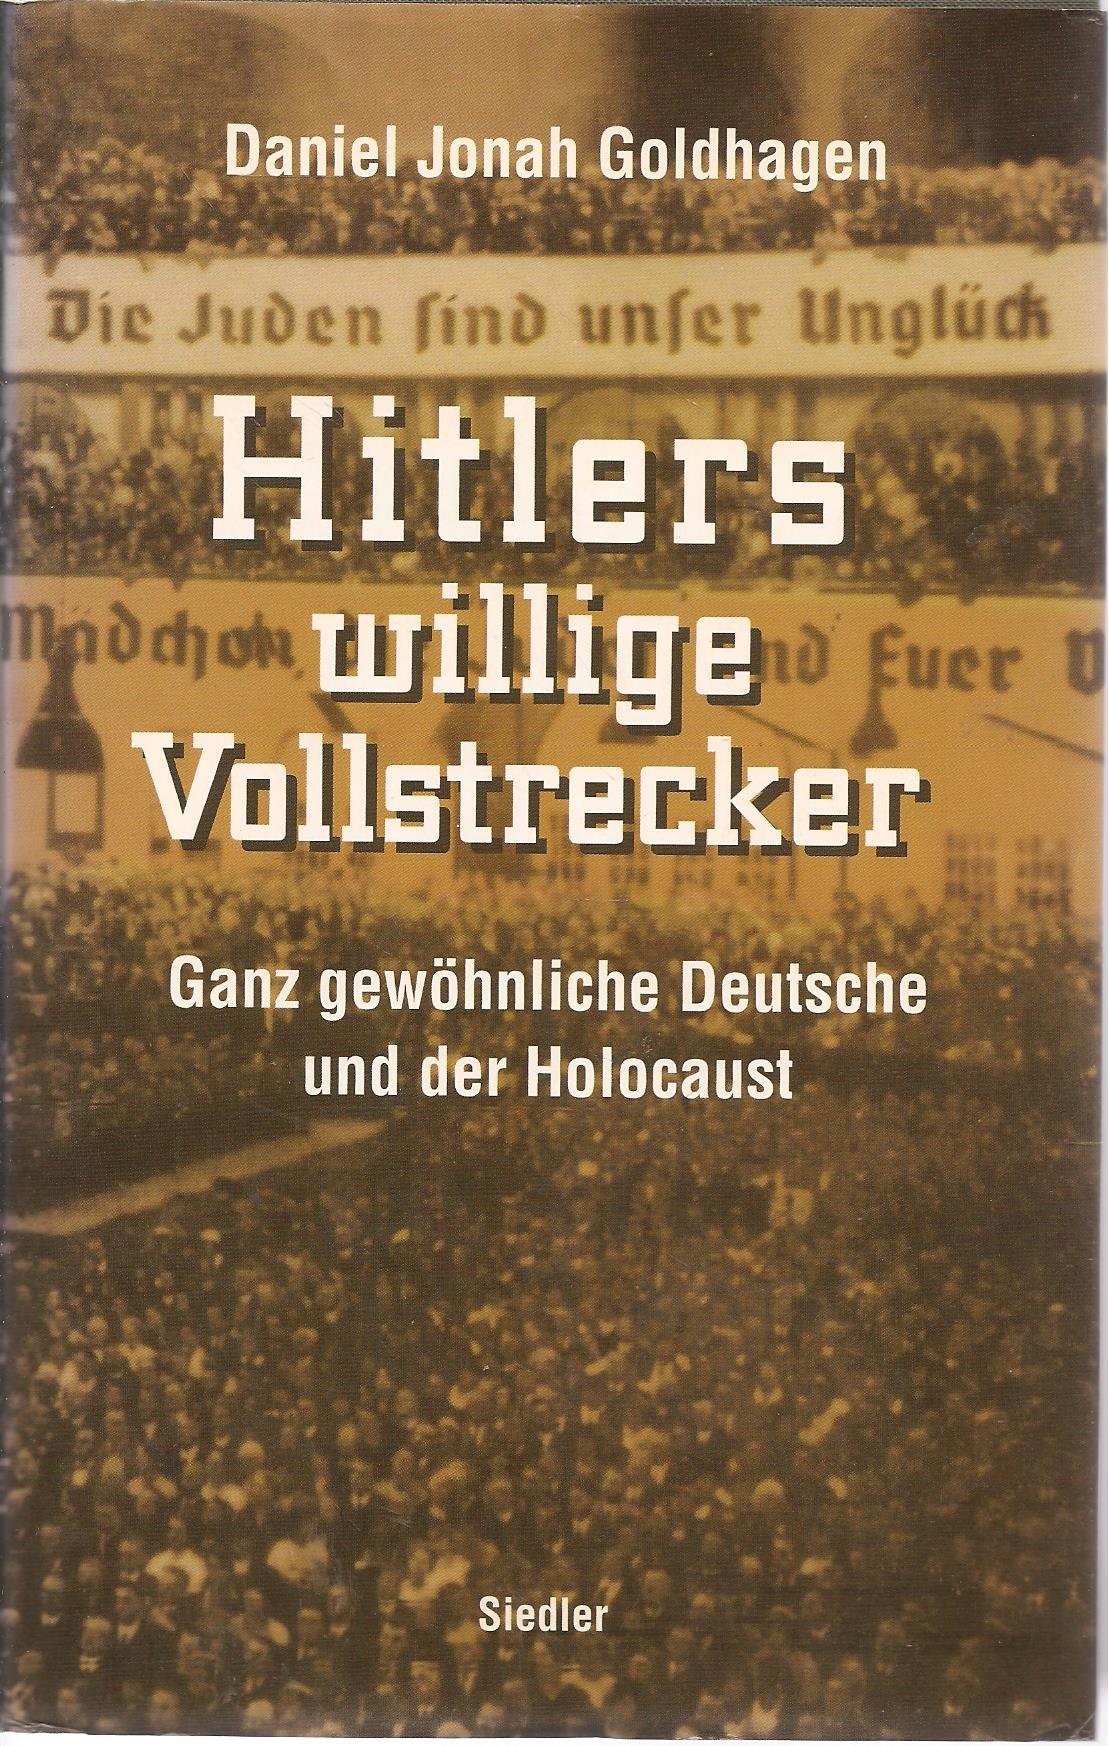 Hitlers willige Vollstrecker: ganz gewöhnliche Deutsche und der Holocaust